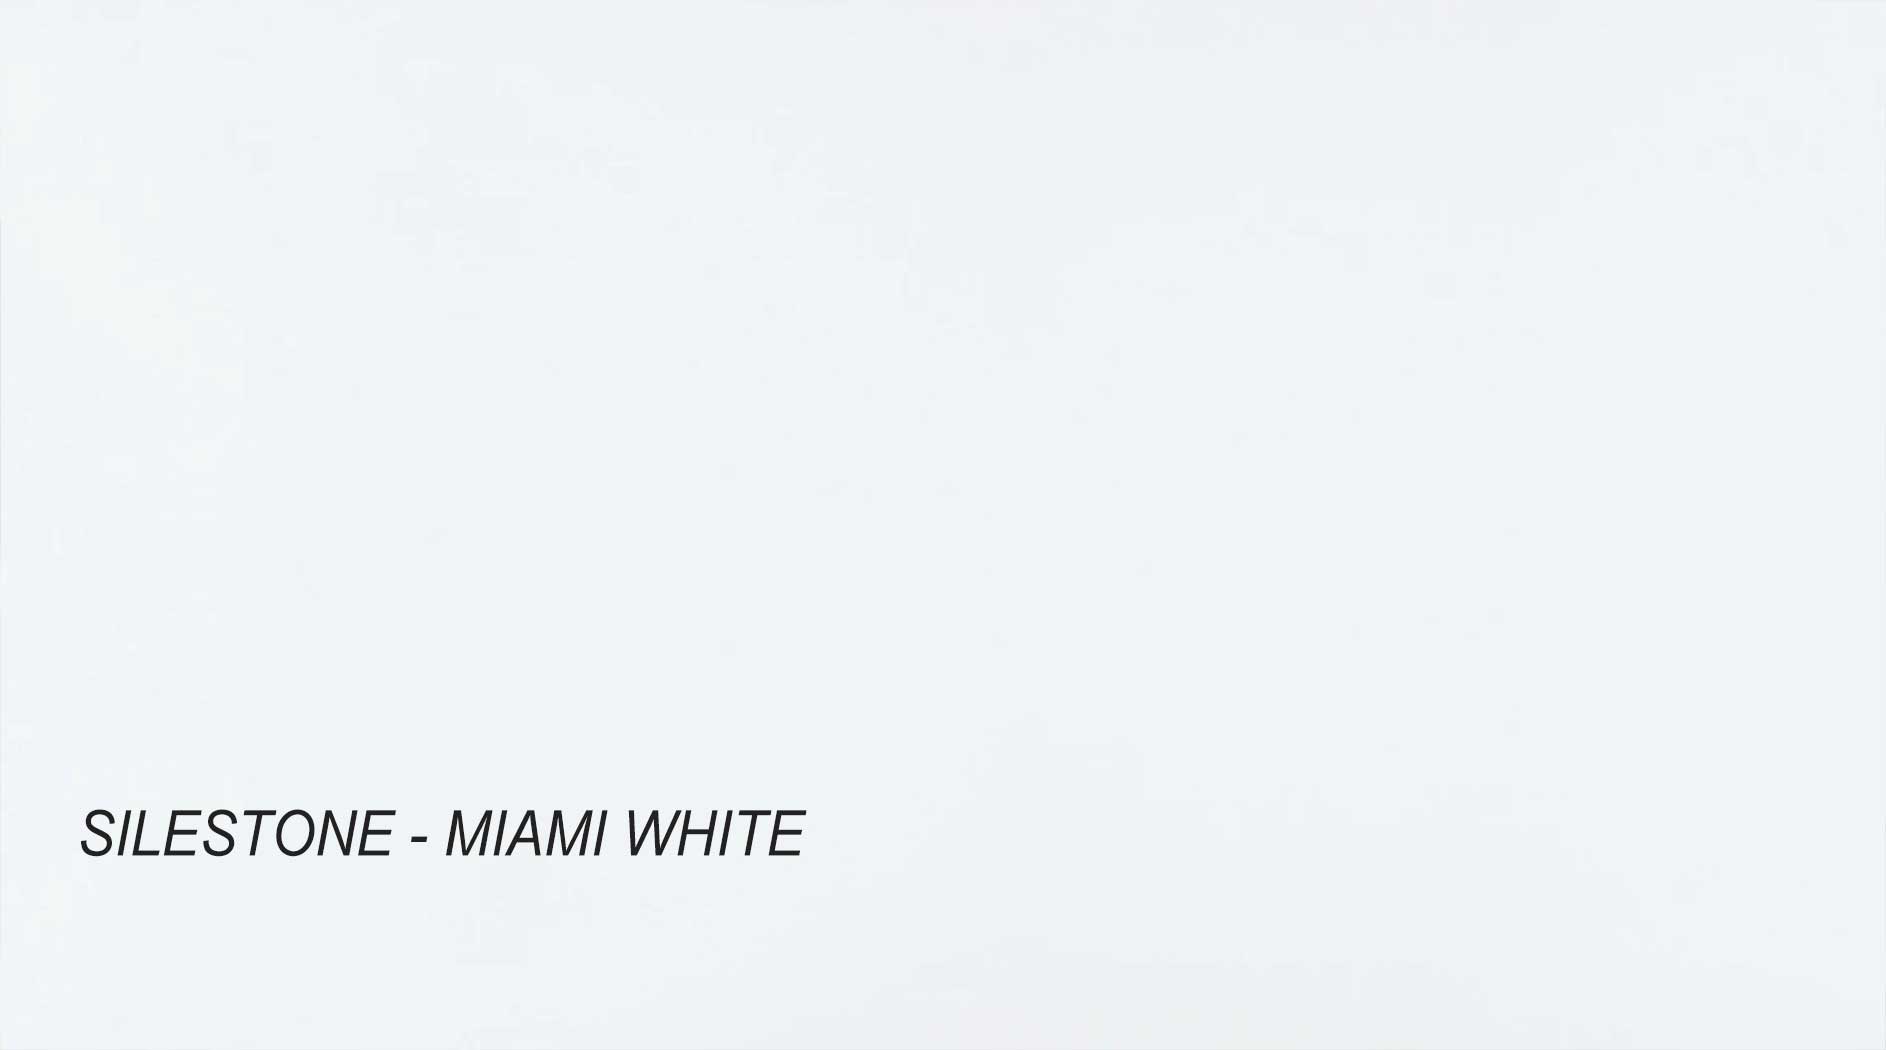 Silestone Miami white